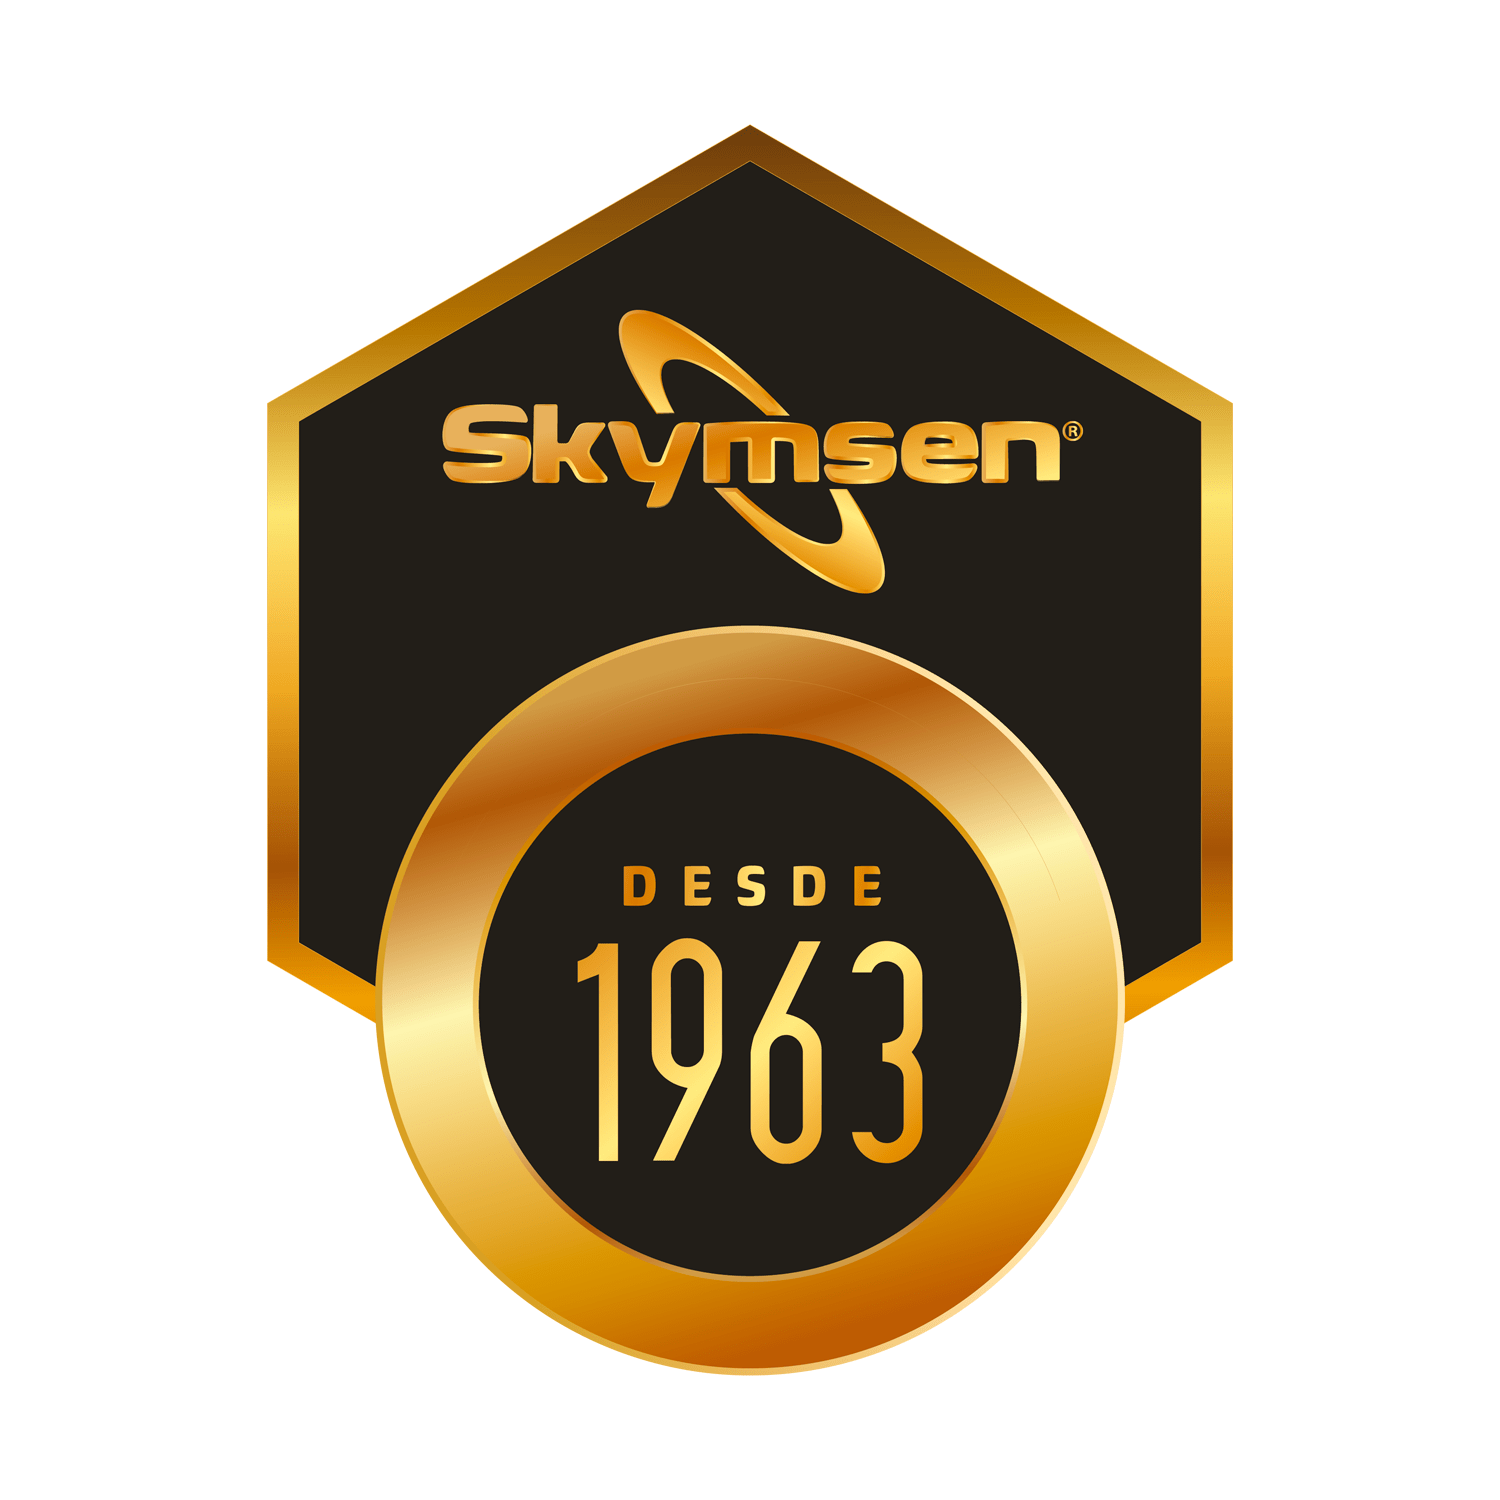 Skymsen desde 1963